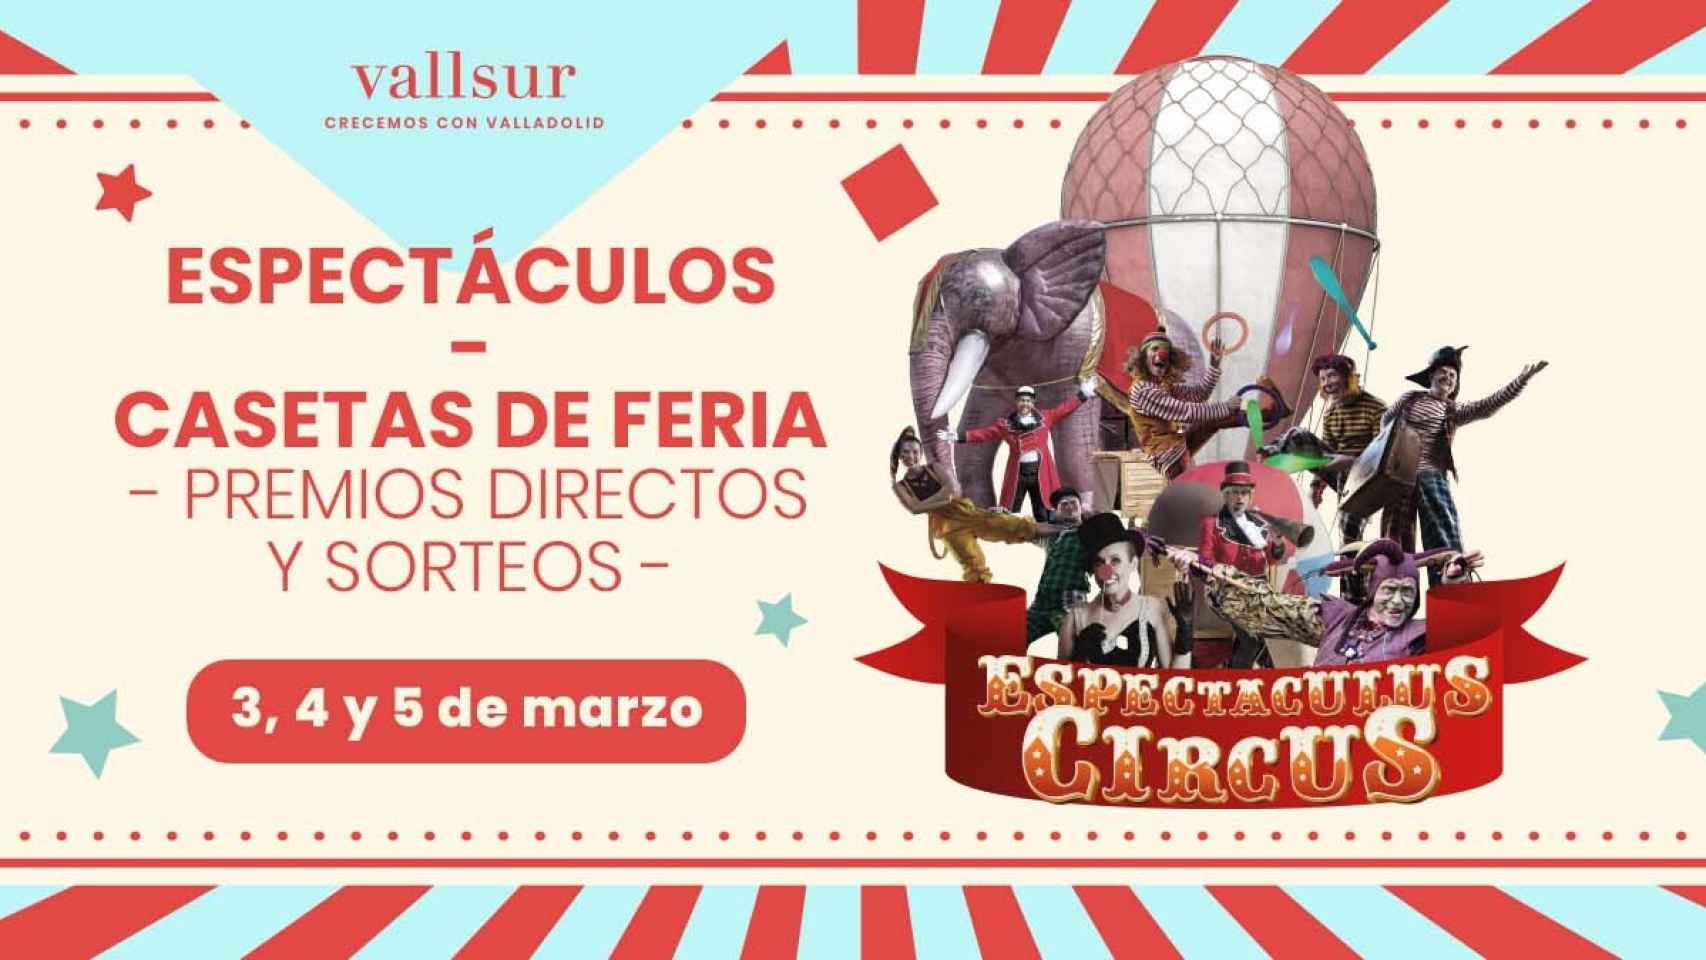 Espectaculus Circus